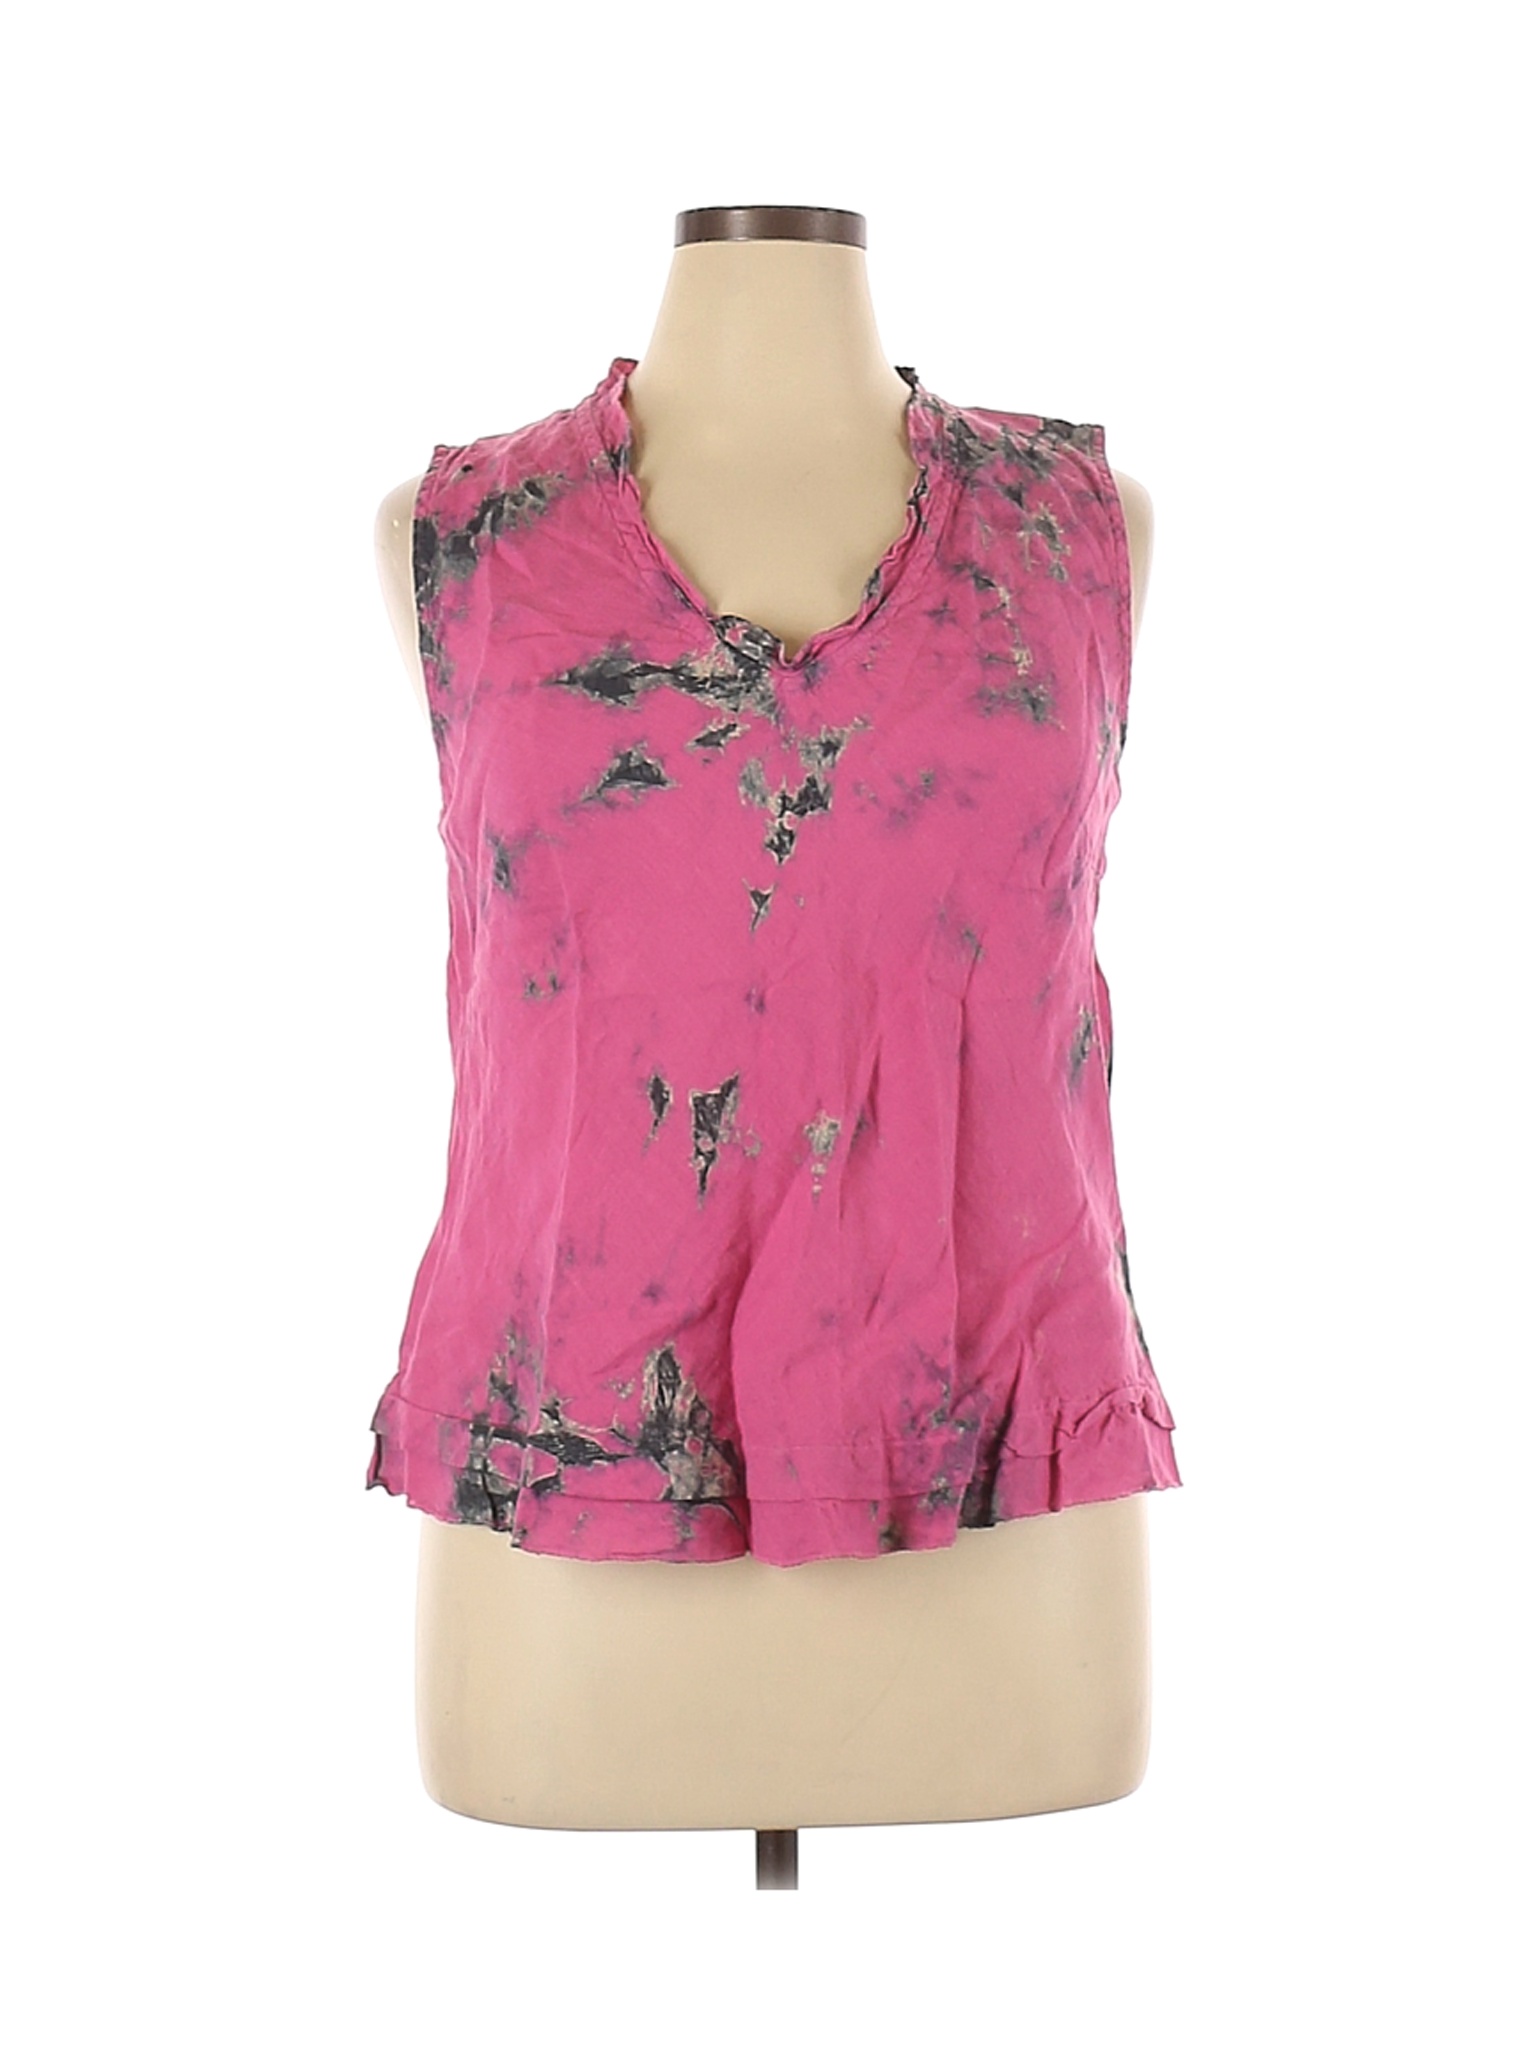 Complét Women Pink Sleeveless Blouse XL | eBay